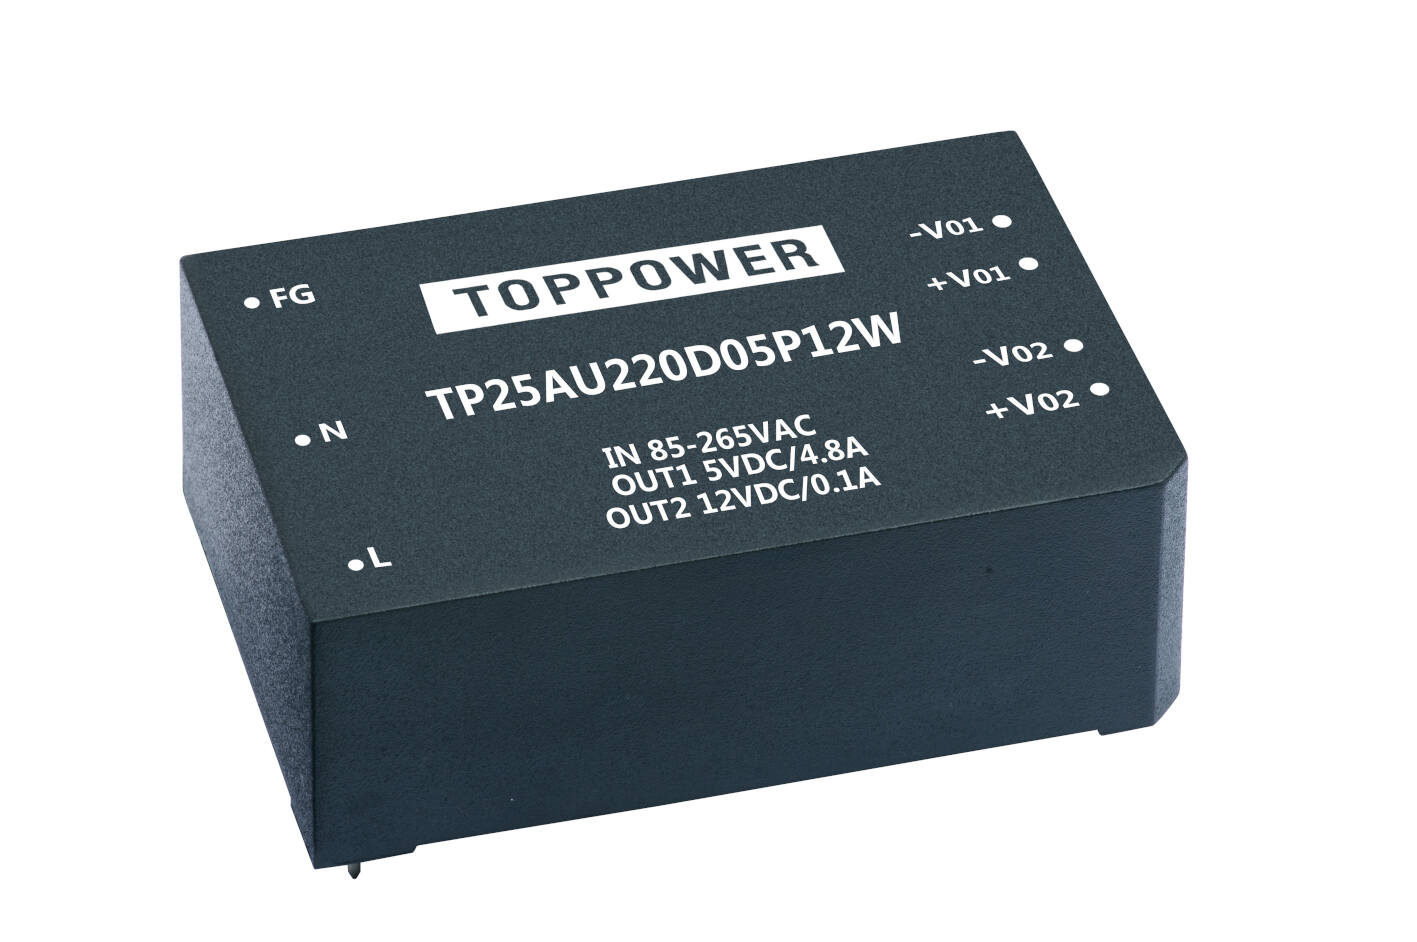 TP25AU220D05P03W AC DC转换器 顶源 99.00